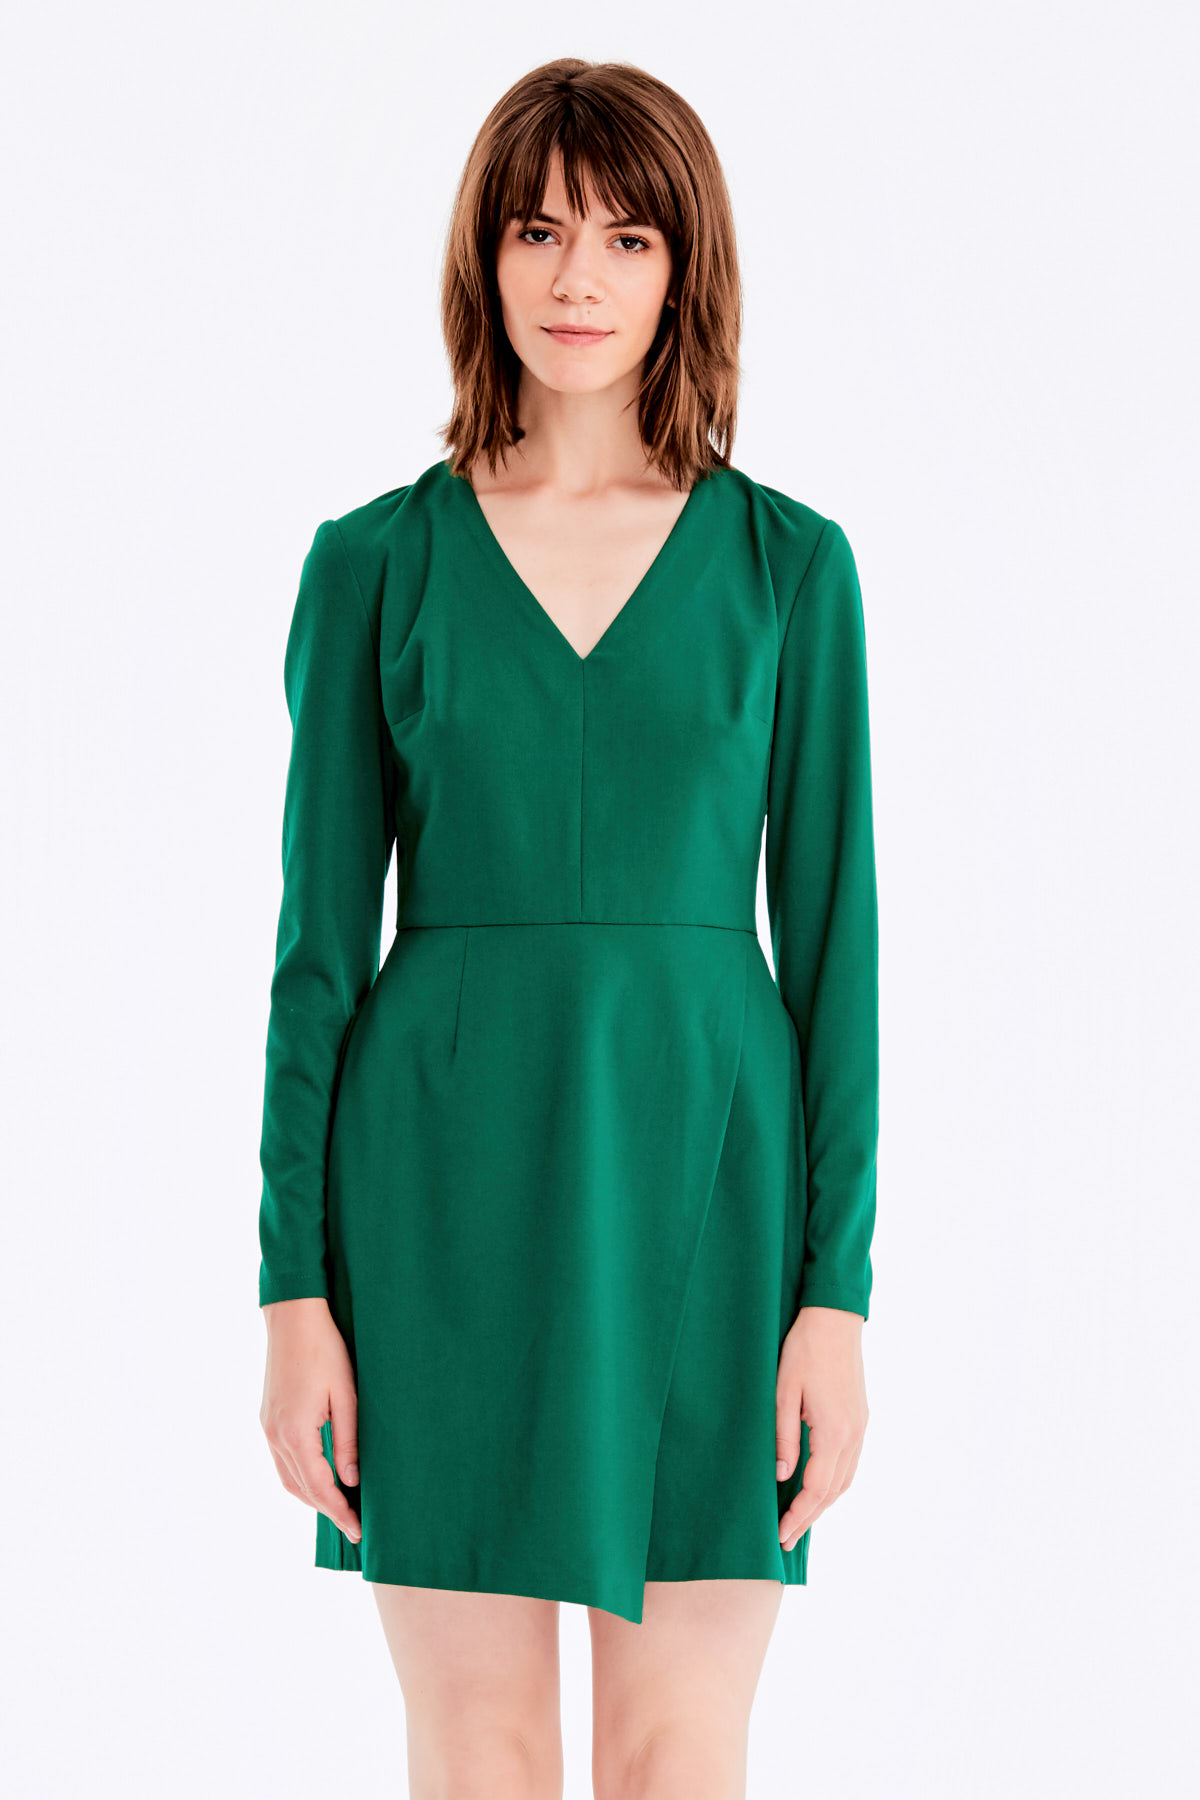 Зелена сукня з V-подібним вирізом, спідниця на зап, фото 2